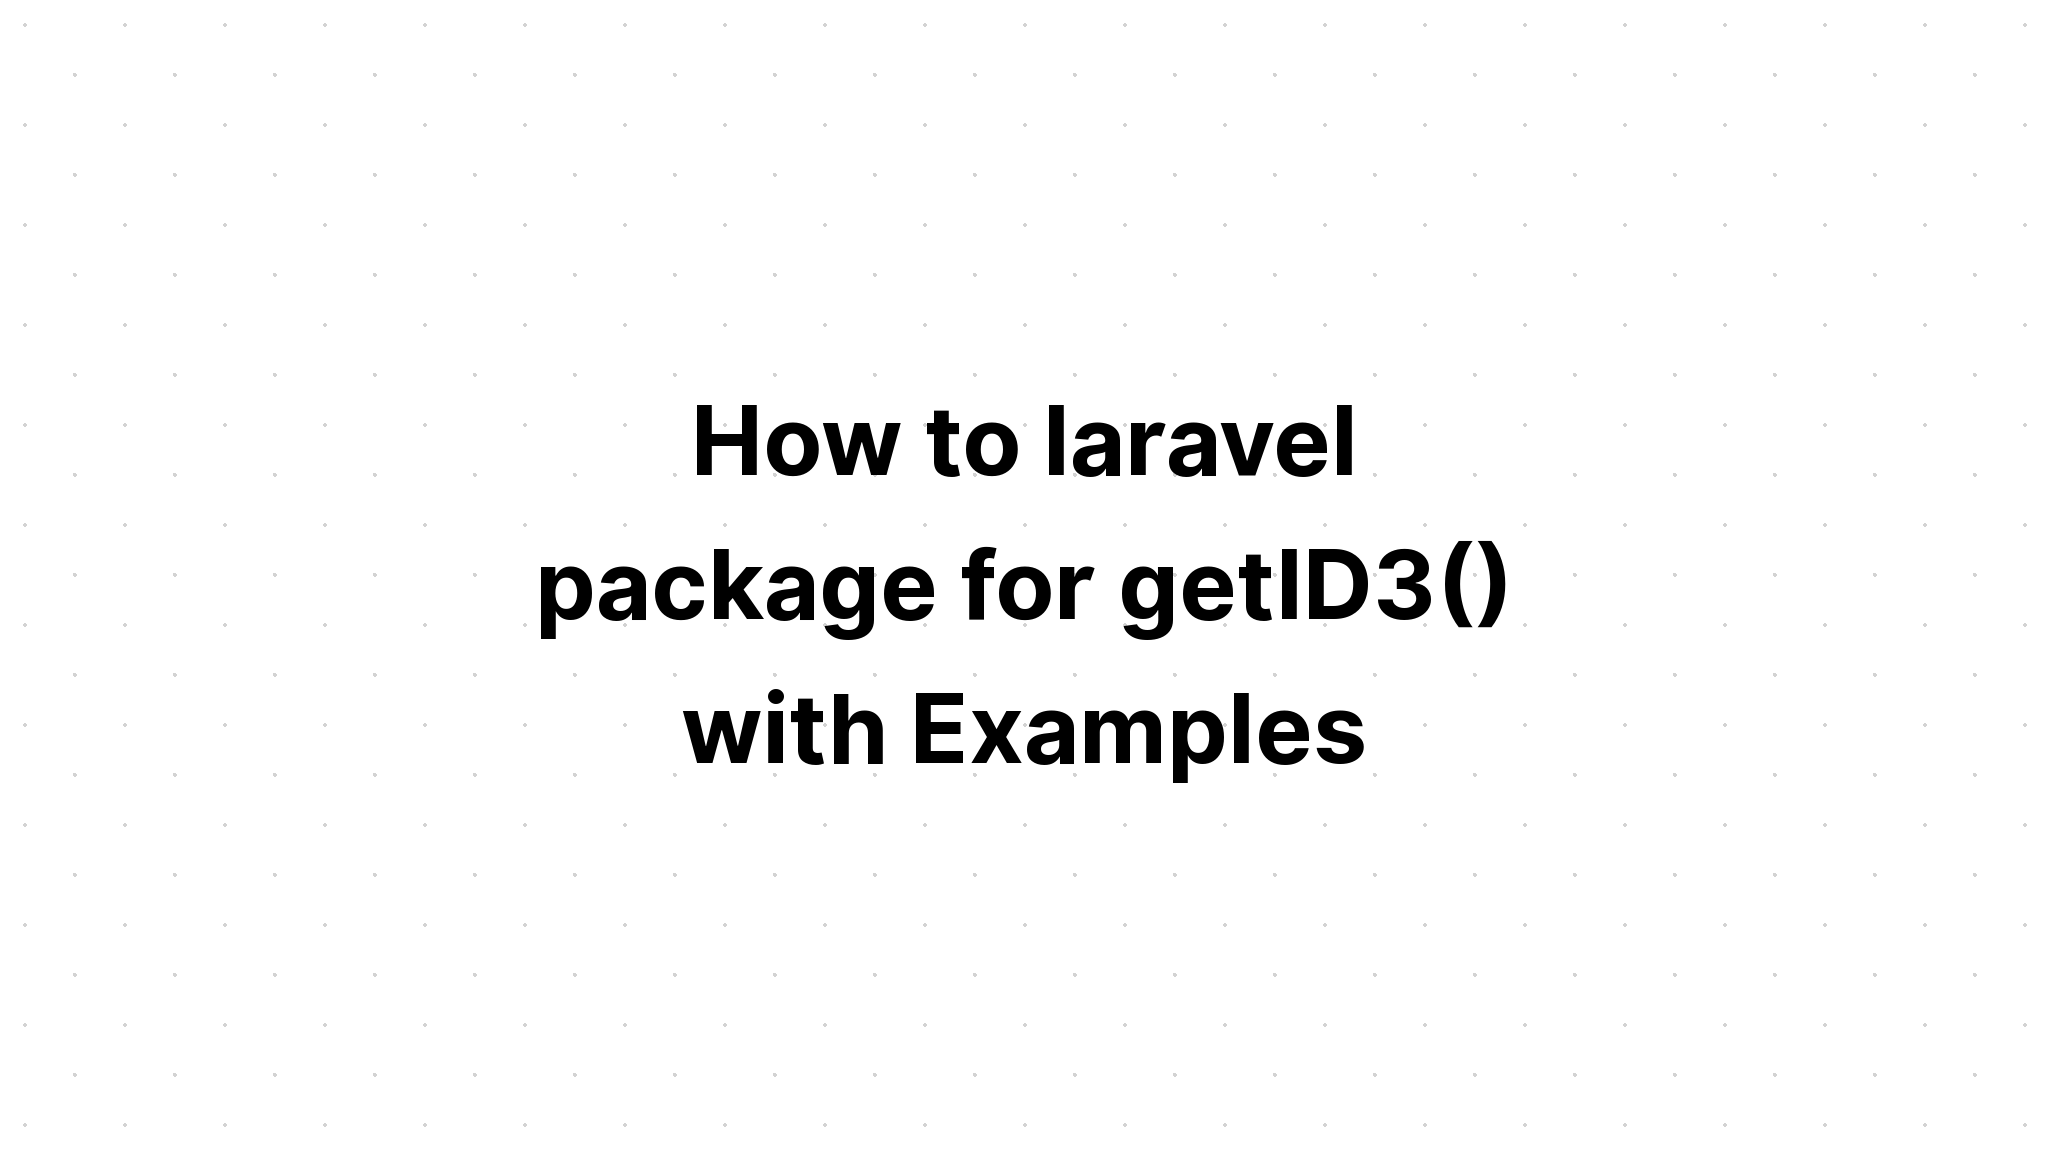 Cách tạo gói laravel cho getID3() với các ví dụ